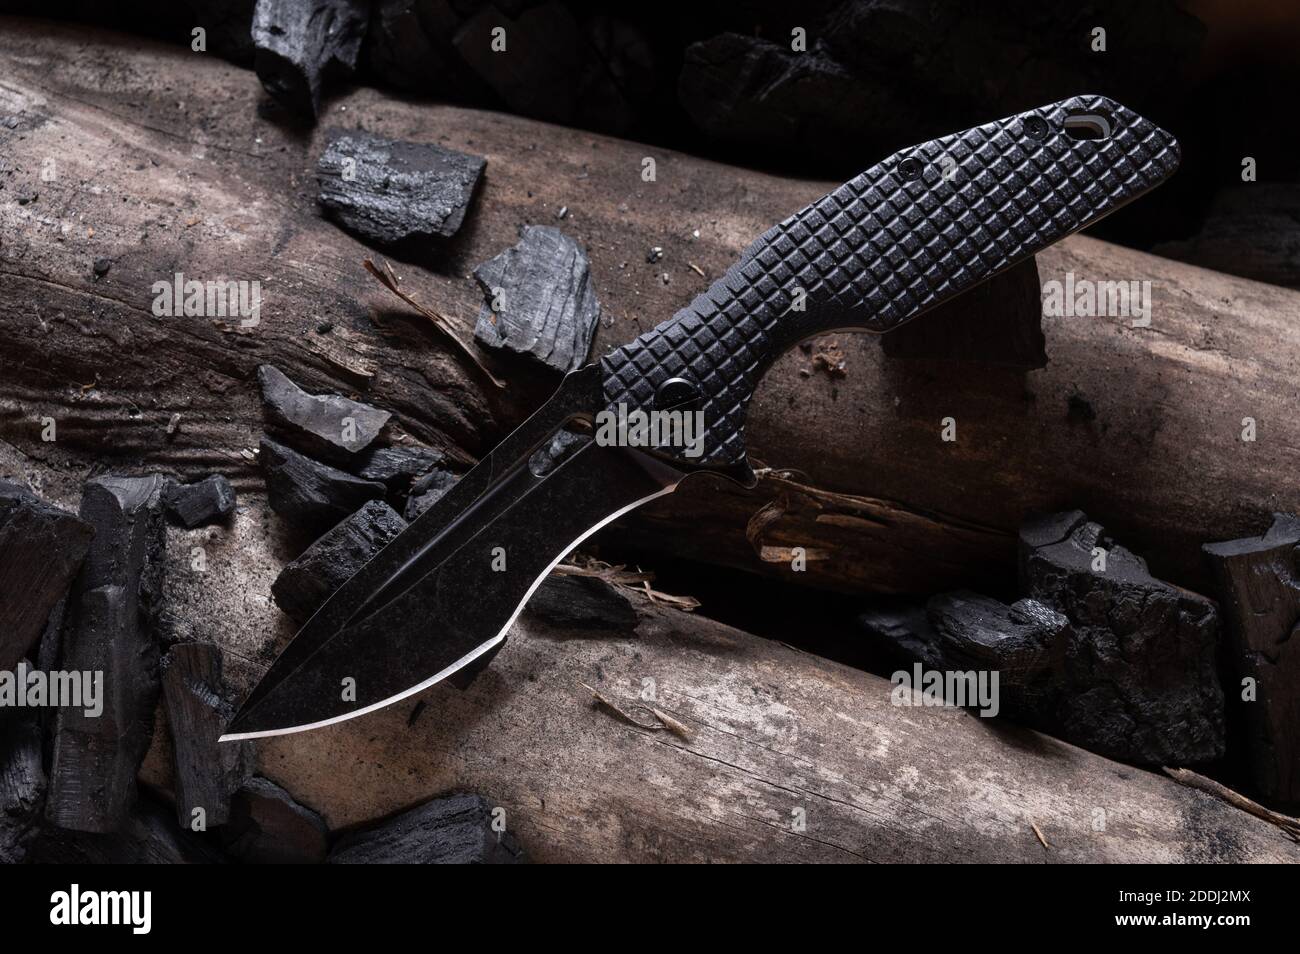 Messer mit gebogener Klinge. Schwarzes Messer auf einem Baumstamm. Messer  mit schwarzer Klinge Stockfotografie - Alamy